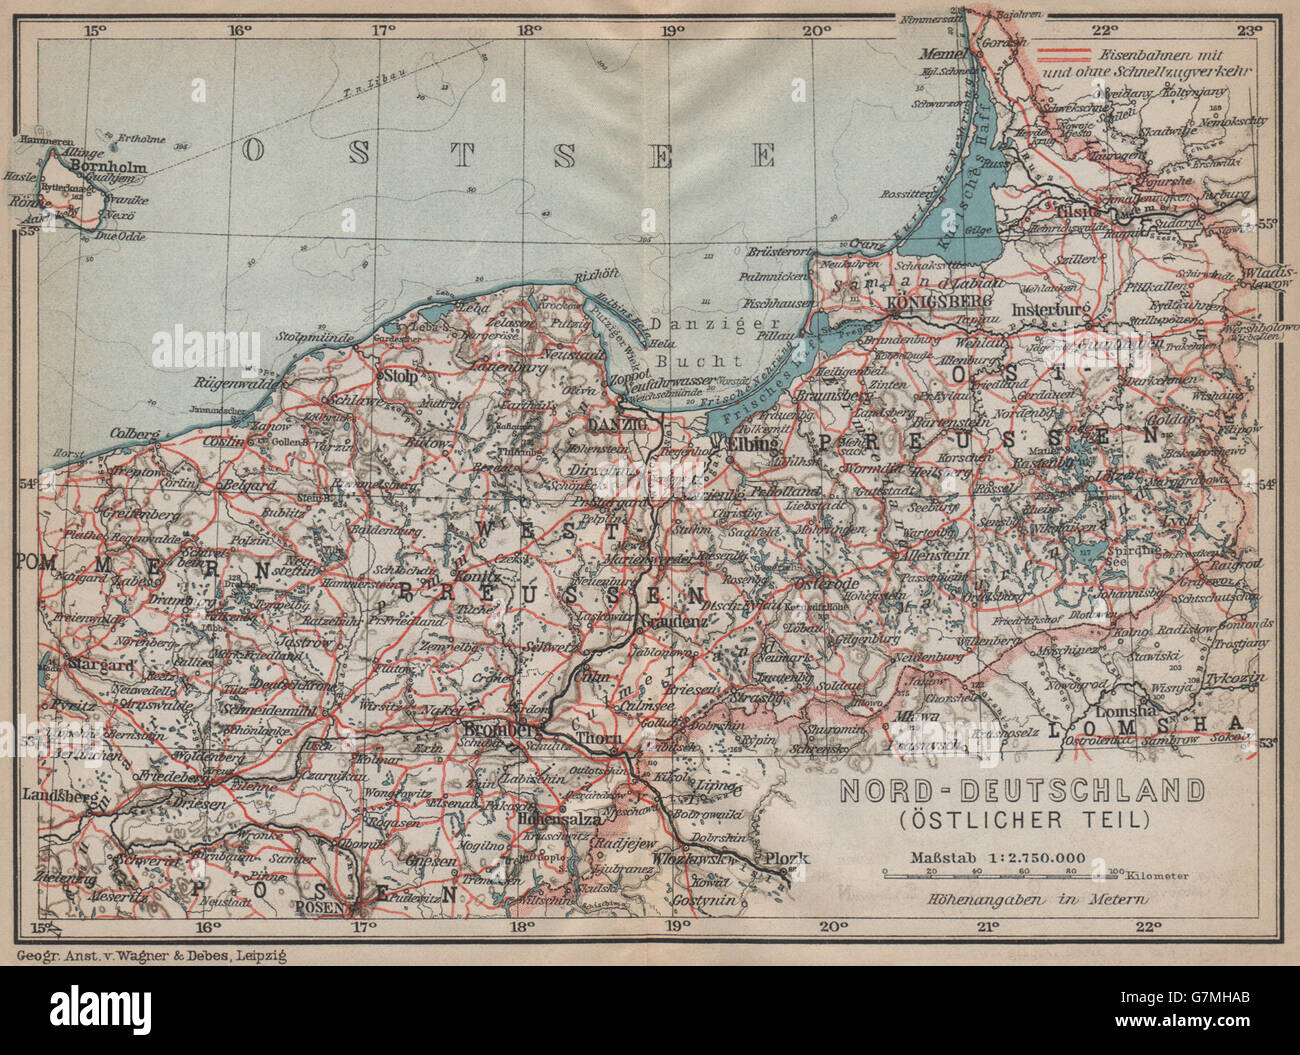 NORD-DEUTSCHLAND (ÖSTLICHER TEIL). La Prusse. La Pologne du nord, Kaliningrad 1913 map Banque D'Images